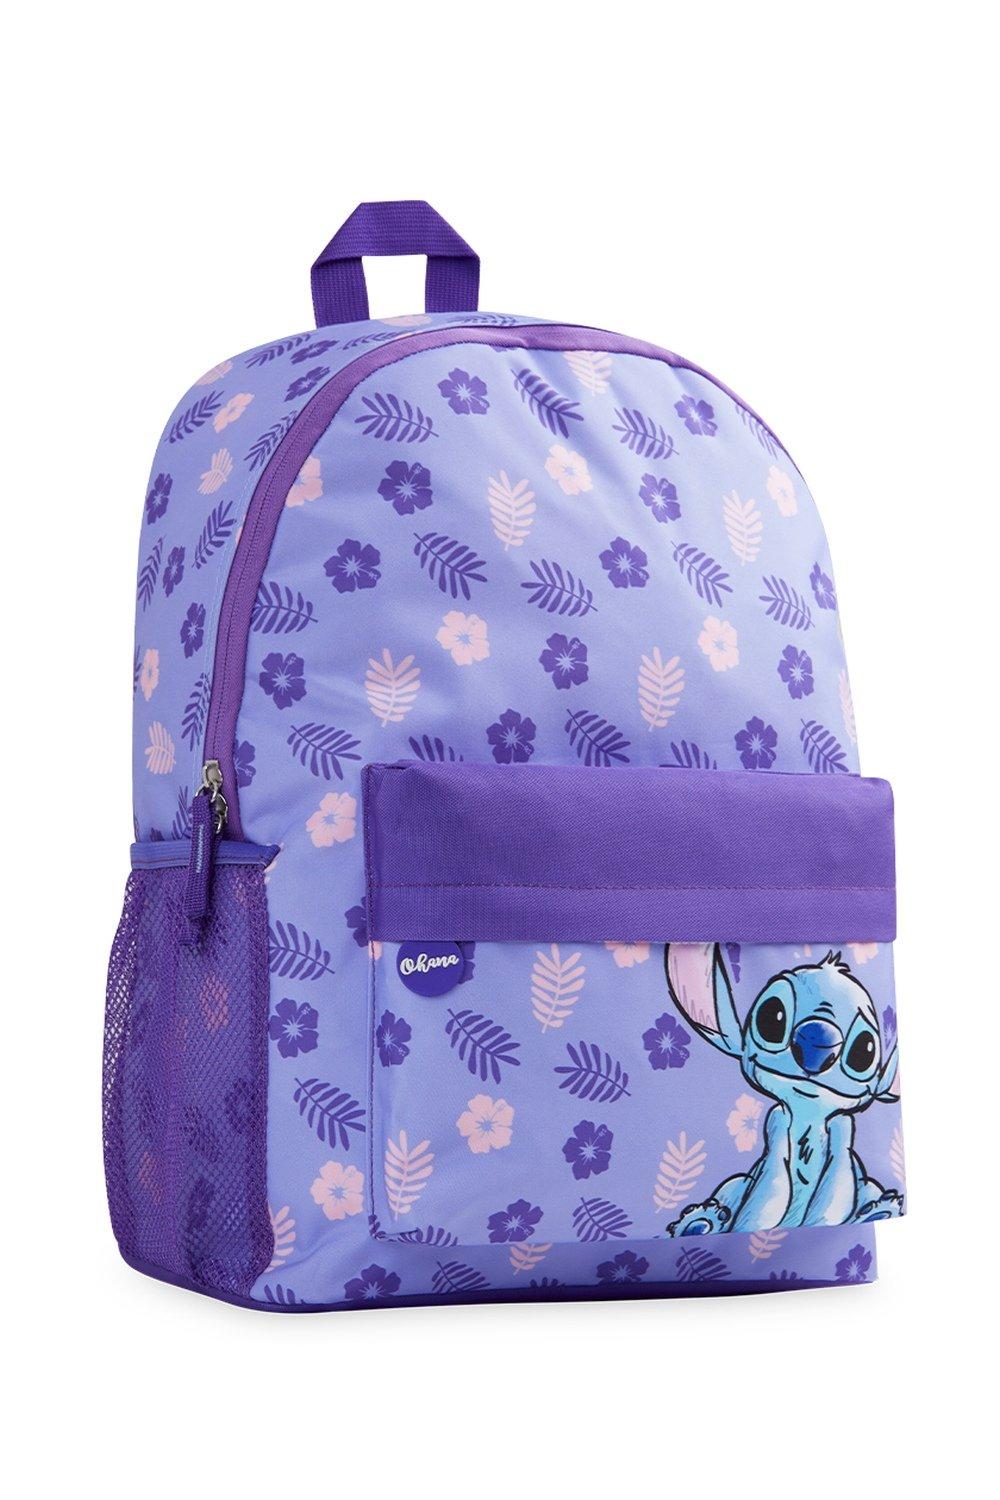 свитшот lilo Школьная сумка Лило и Стич Disney, фиолетовый